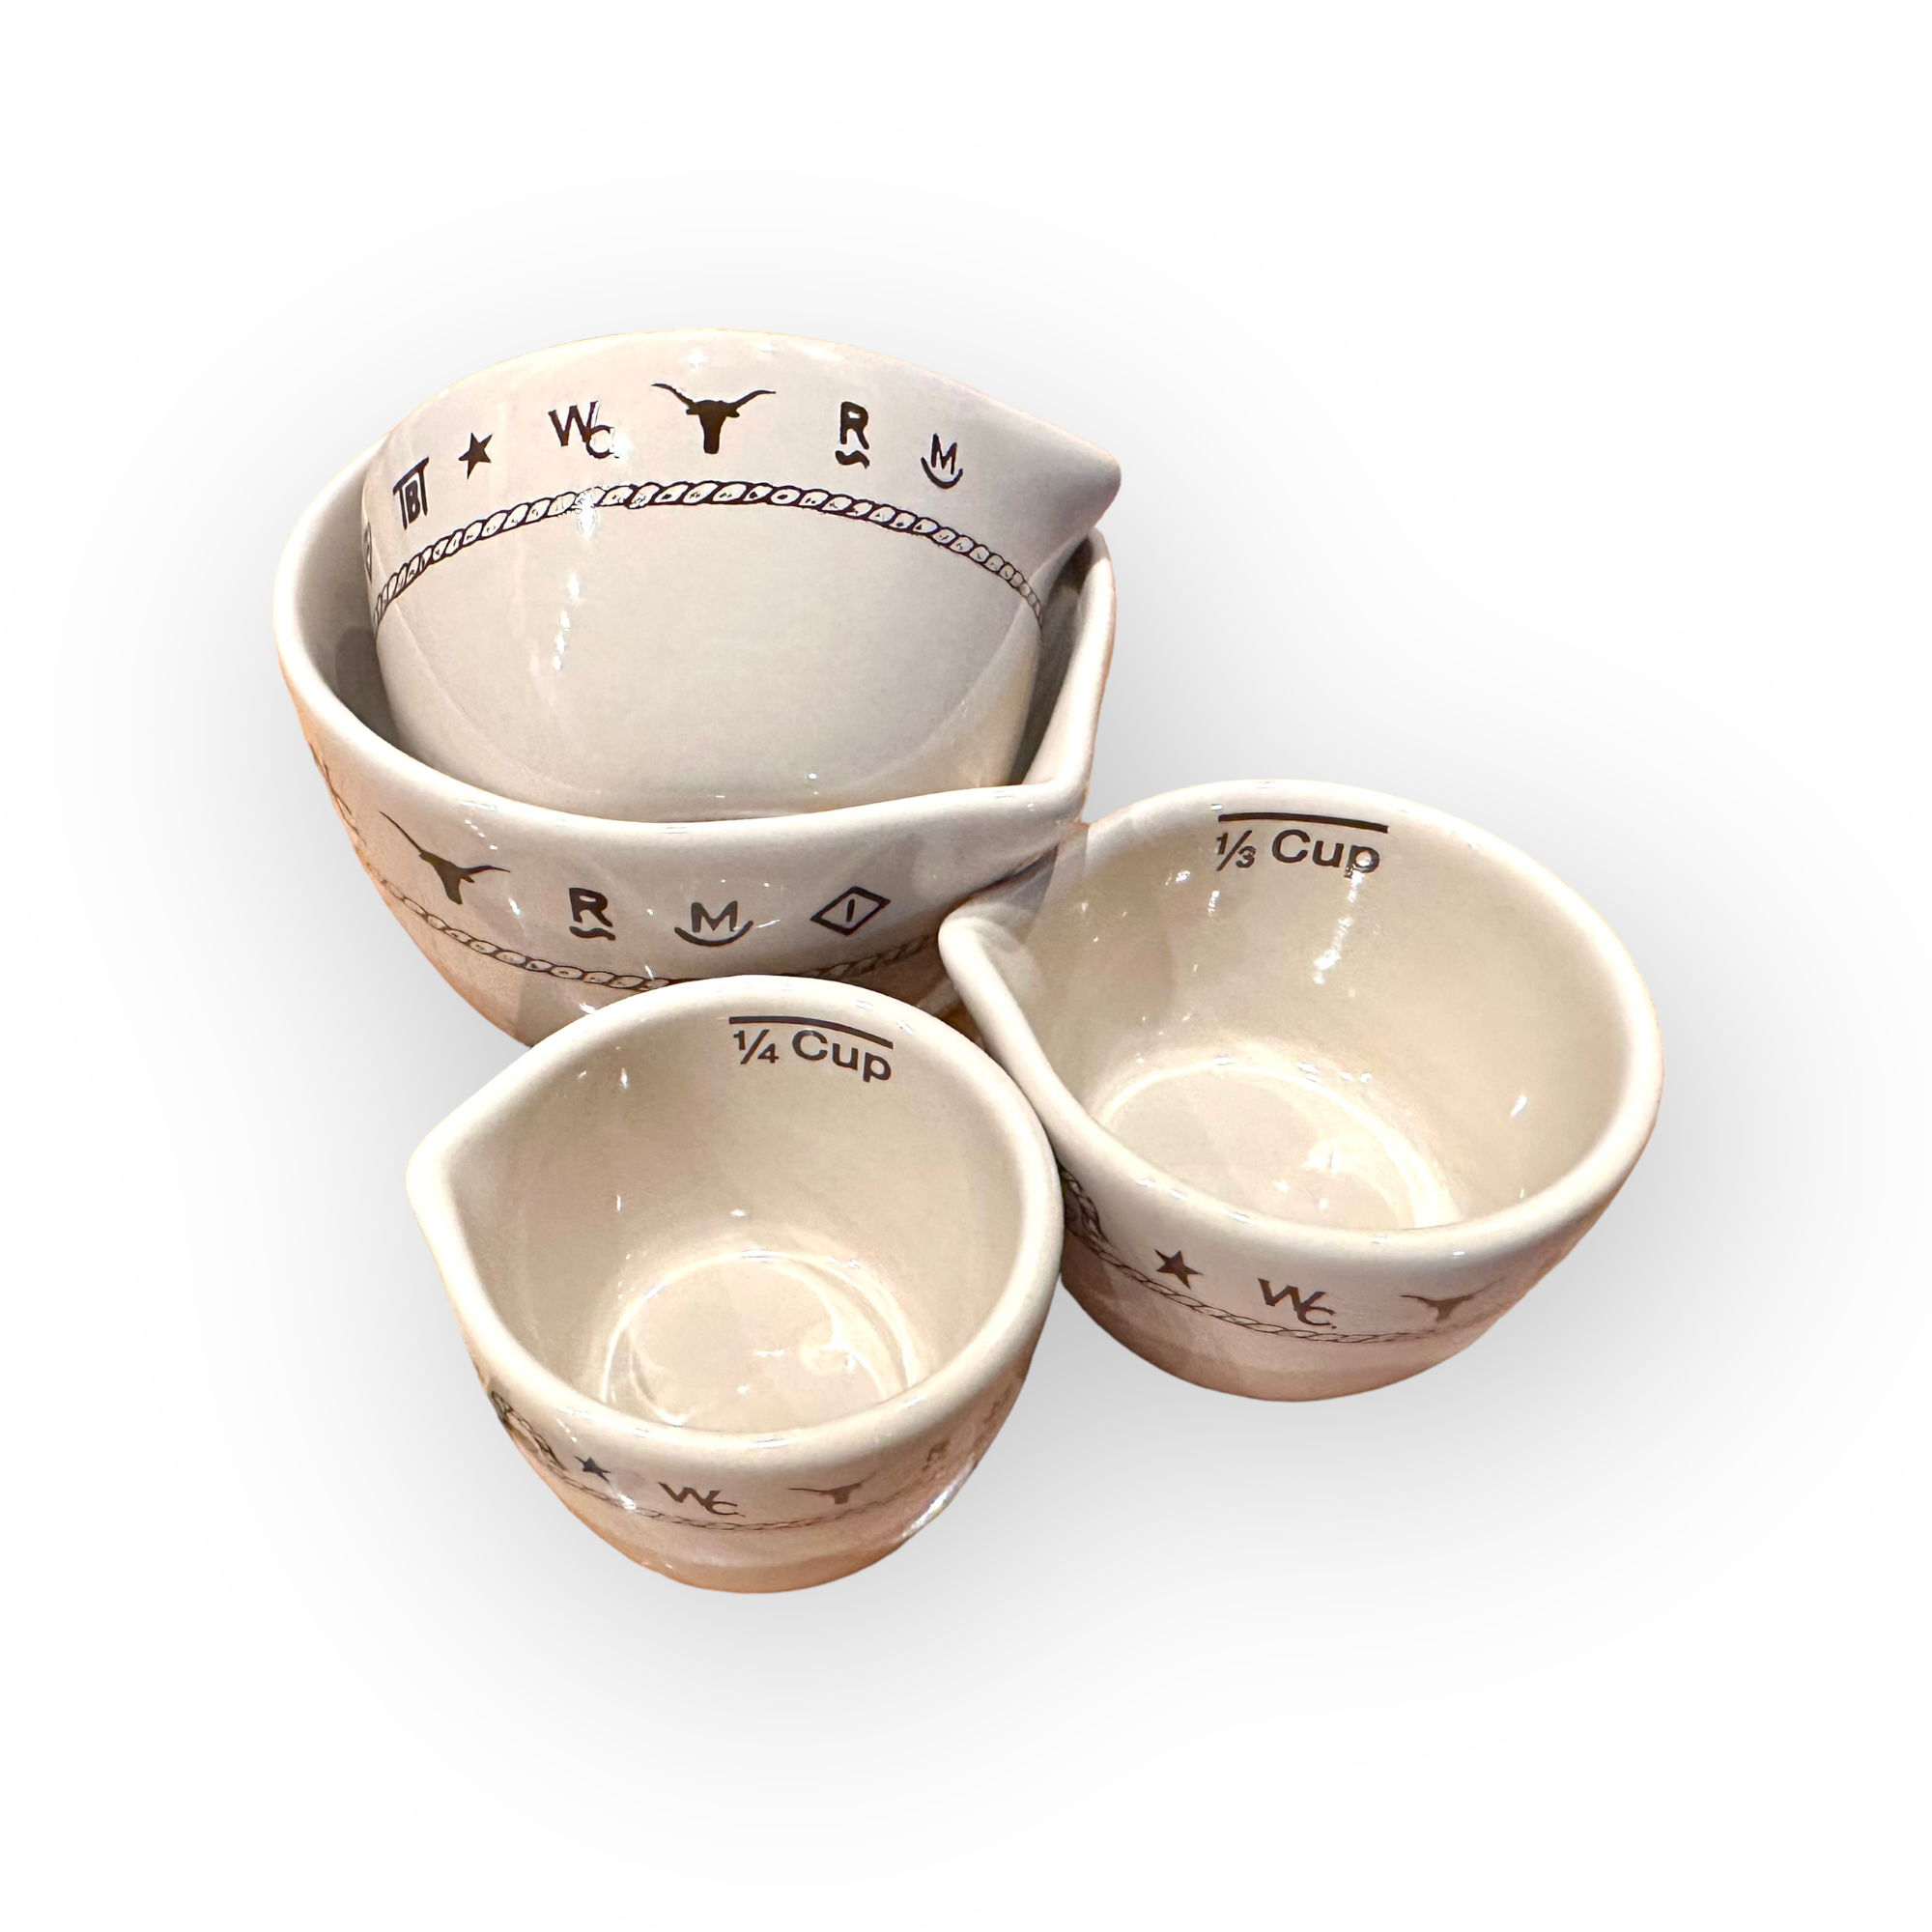 Branded Ceramic Measuring Cups